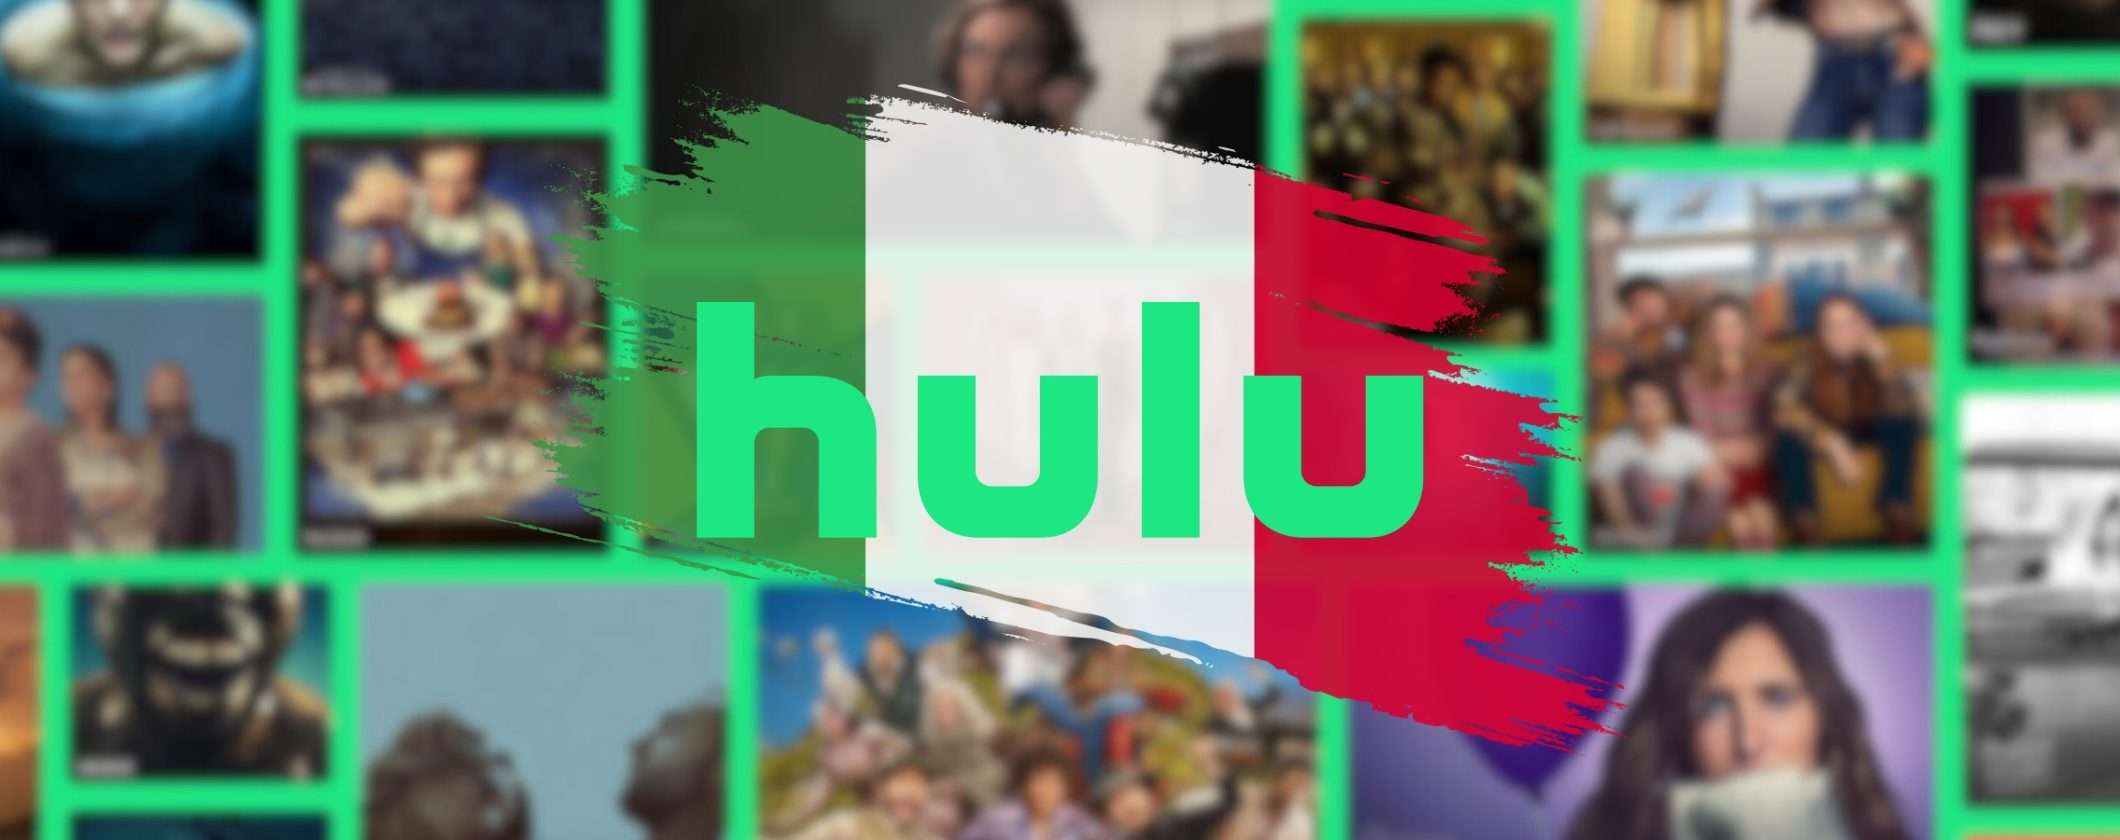 Come vedere Maggie Moore(s) su Hulu in streaming dall'Italia